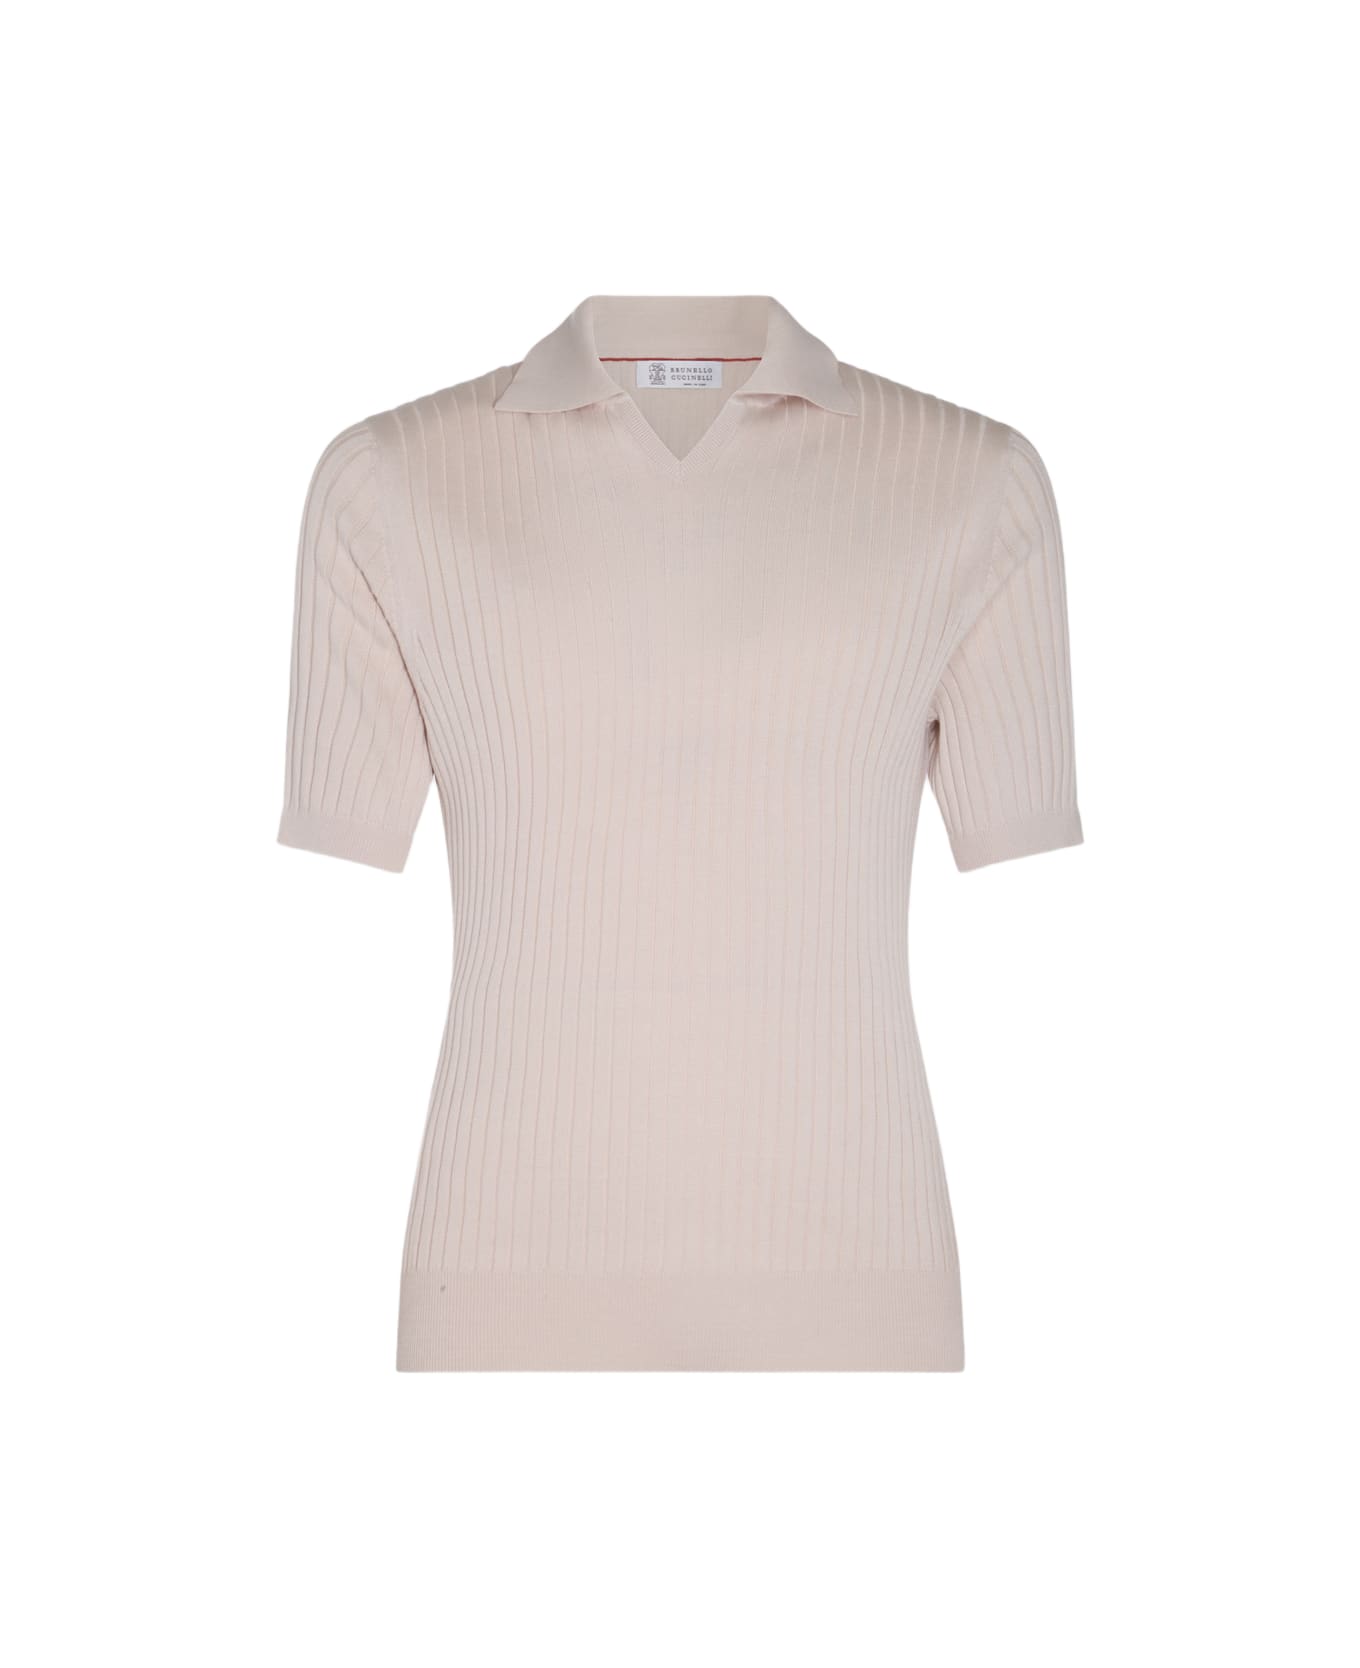 Brunello Cucinelli Beige Cotton Polo Shirt - Beige